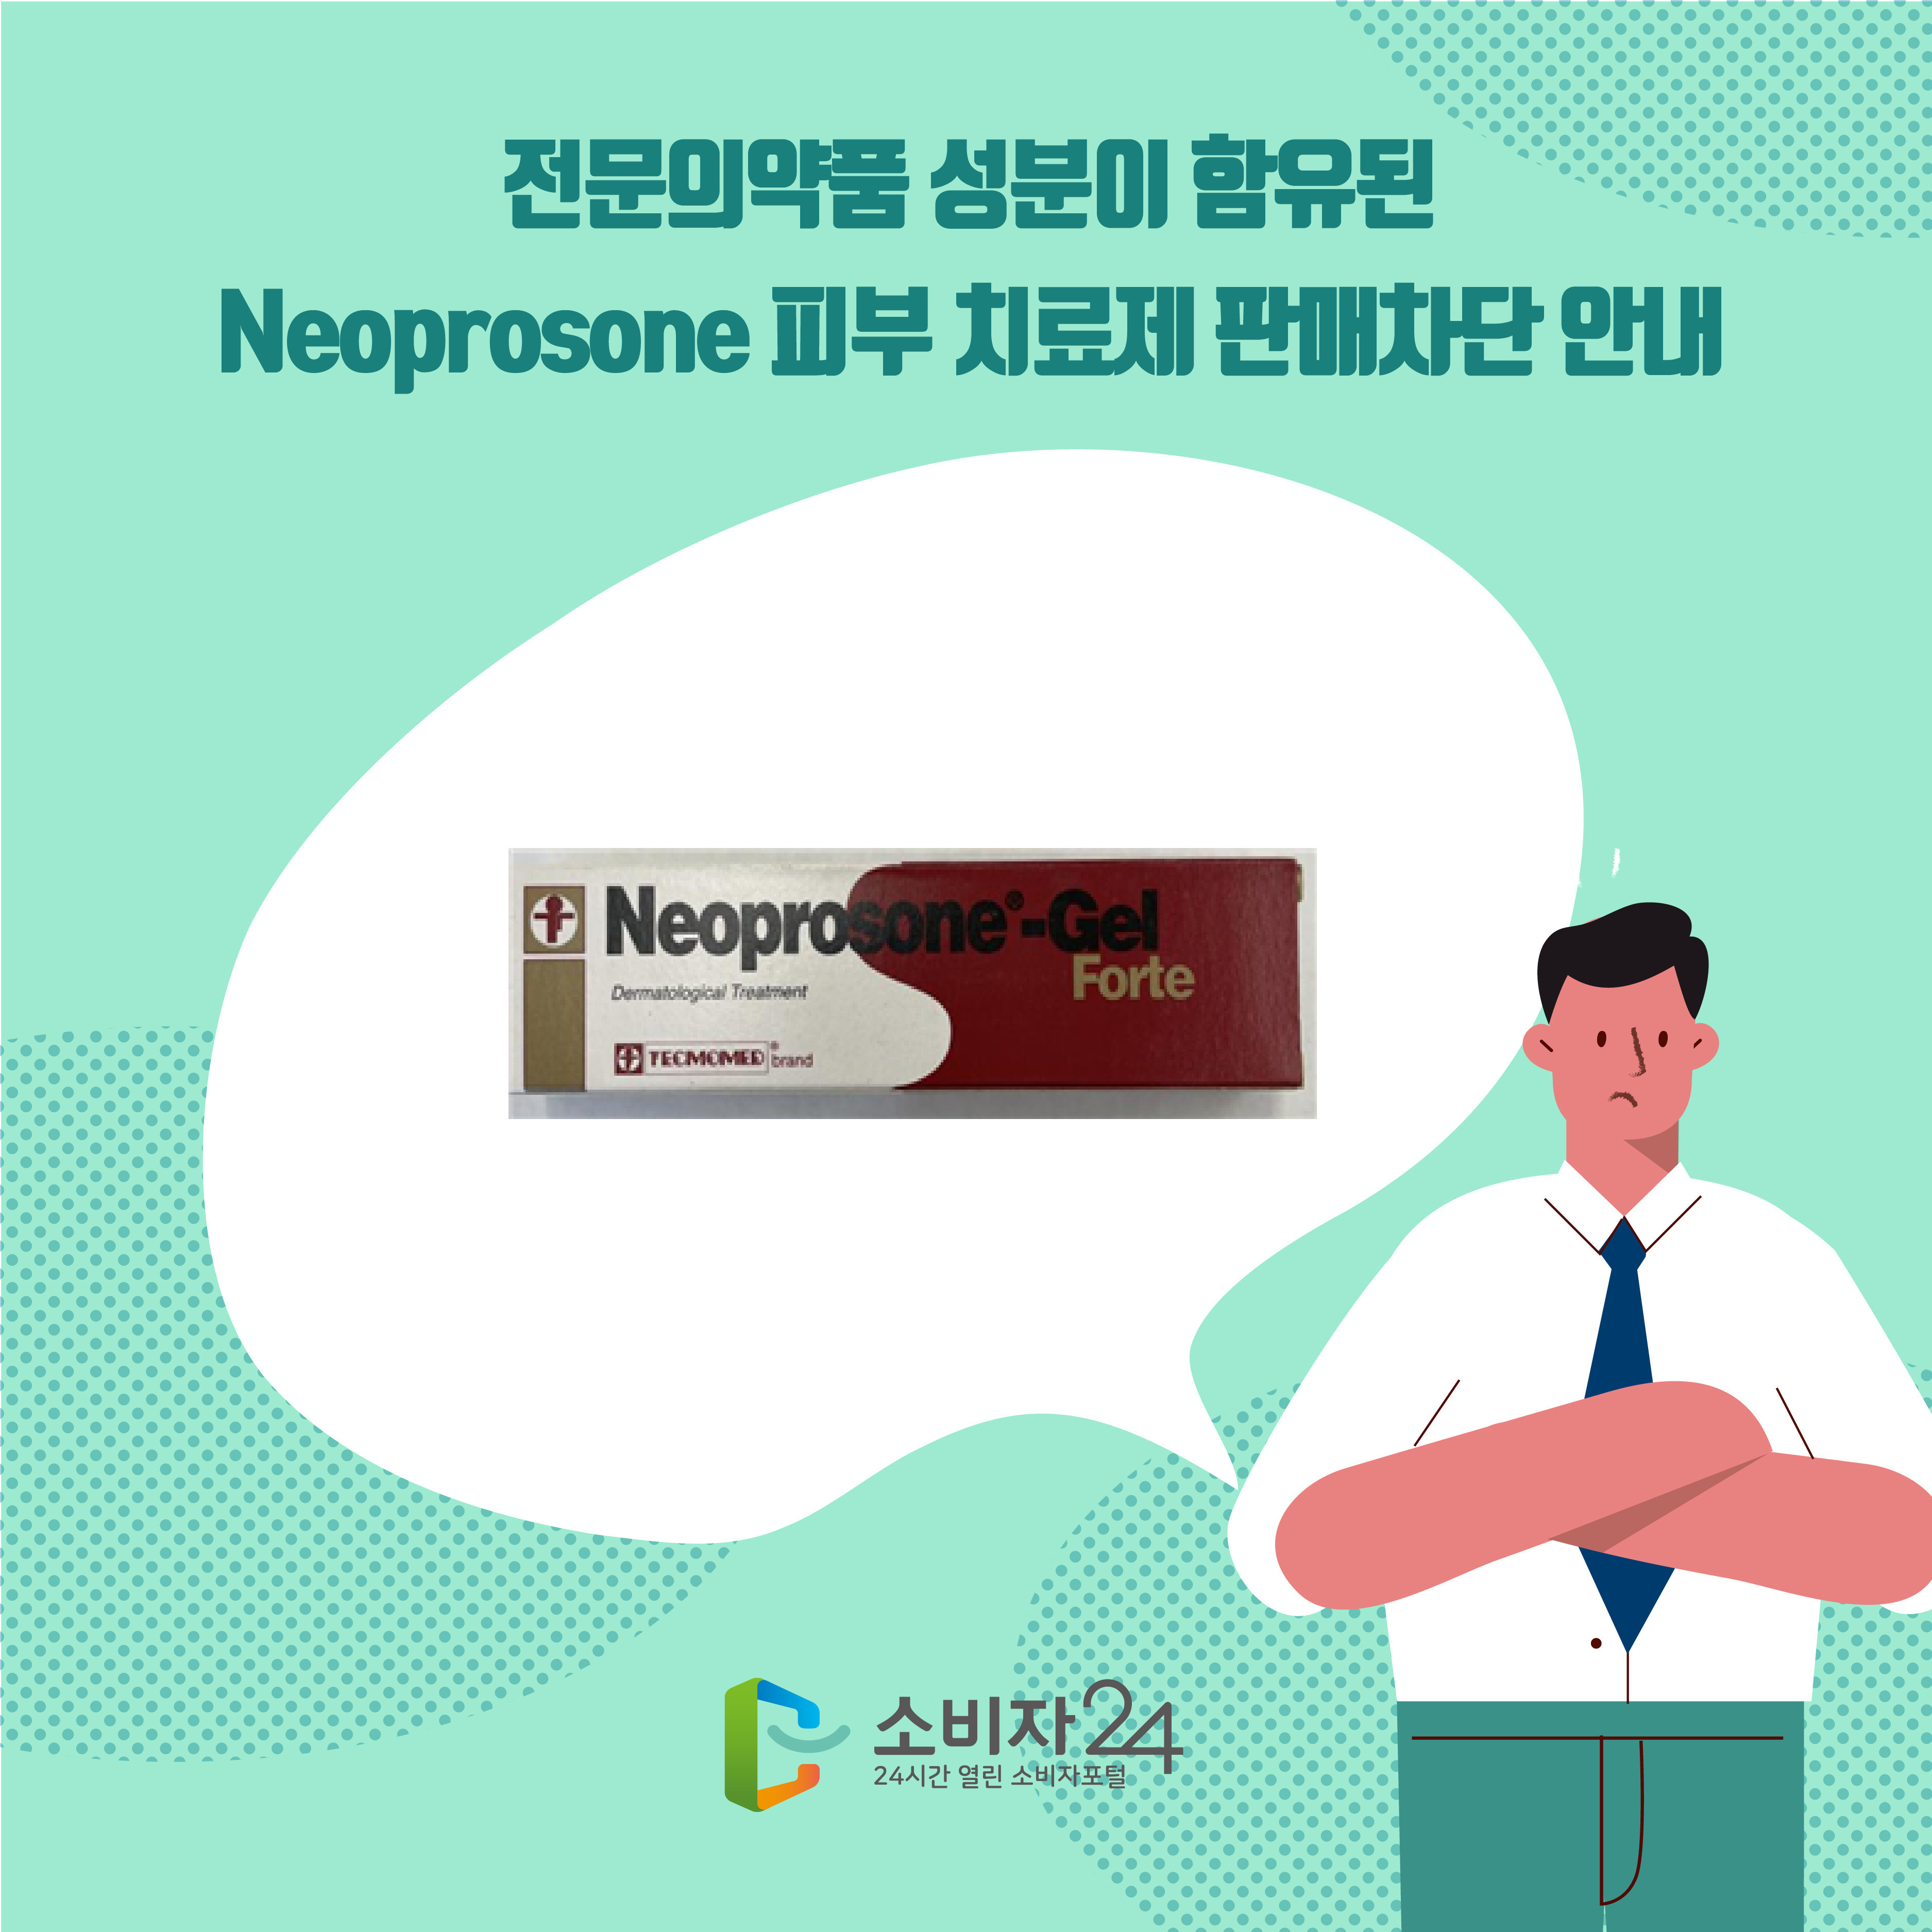 전문의약품 성분이 함유된 Neoprosone 피부 치료제 판매차단 안내 1번째 이미지